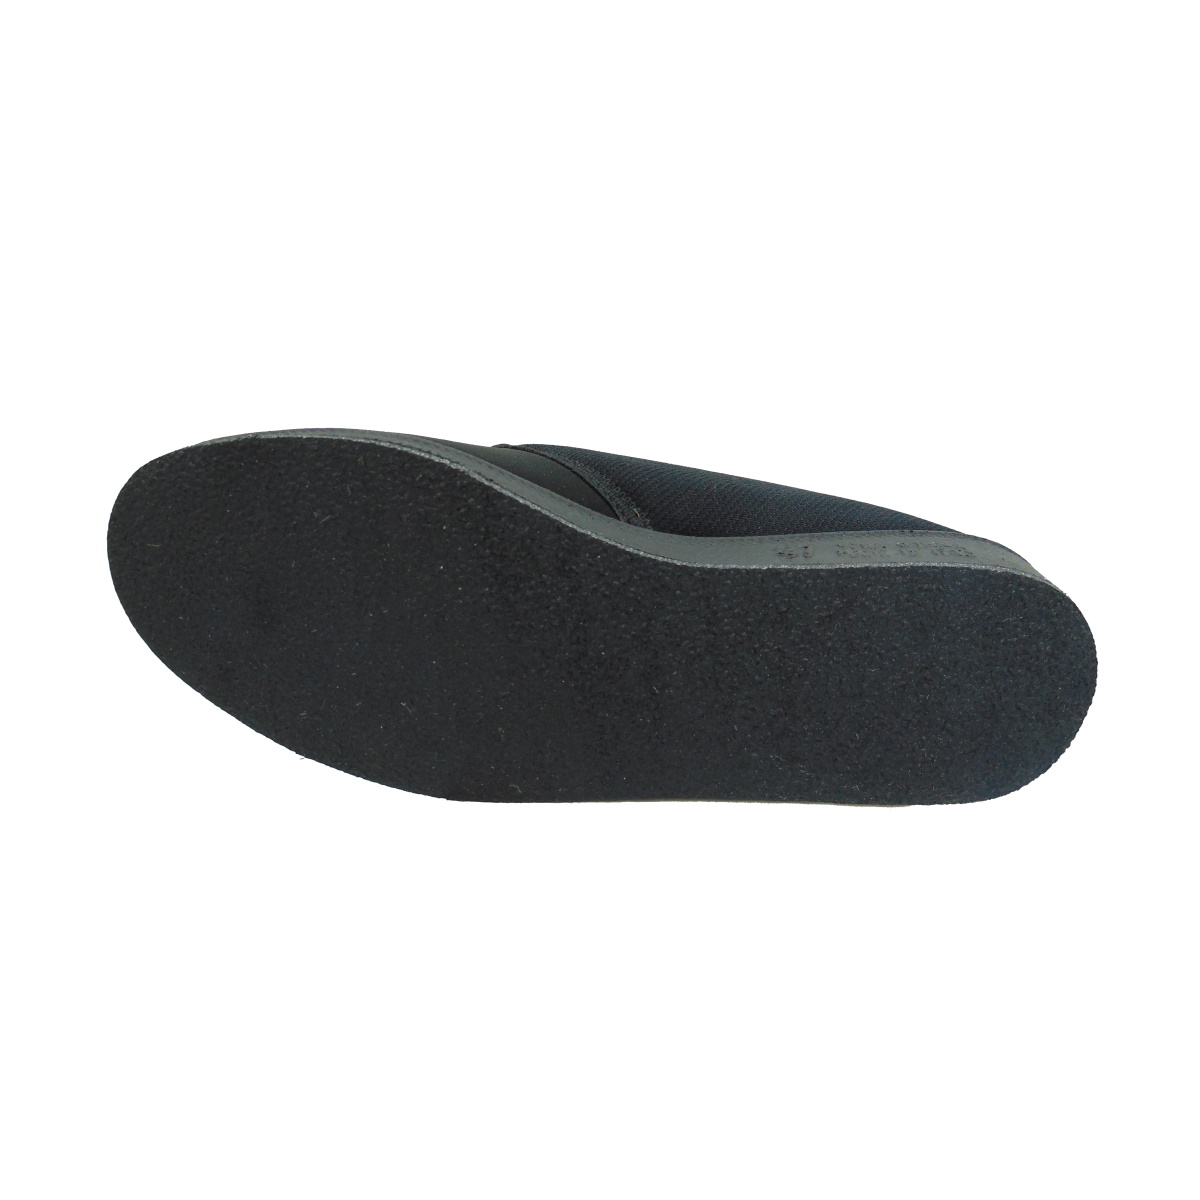 Pantofola Donna elasticizzata con strappo Emanuela 655 nero (versione estiva)